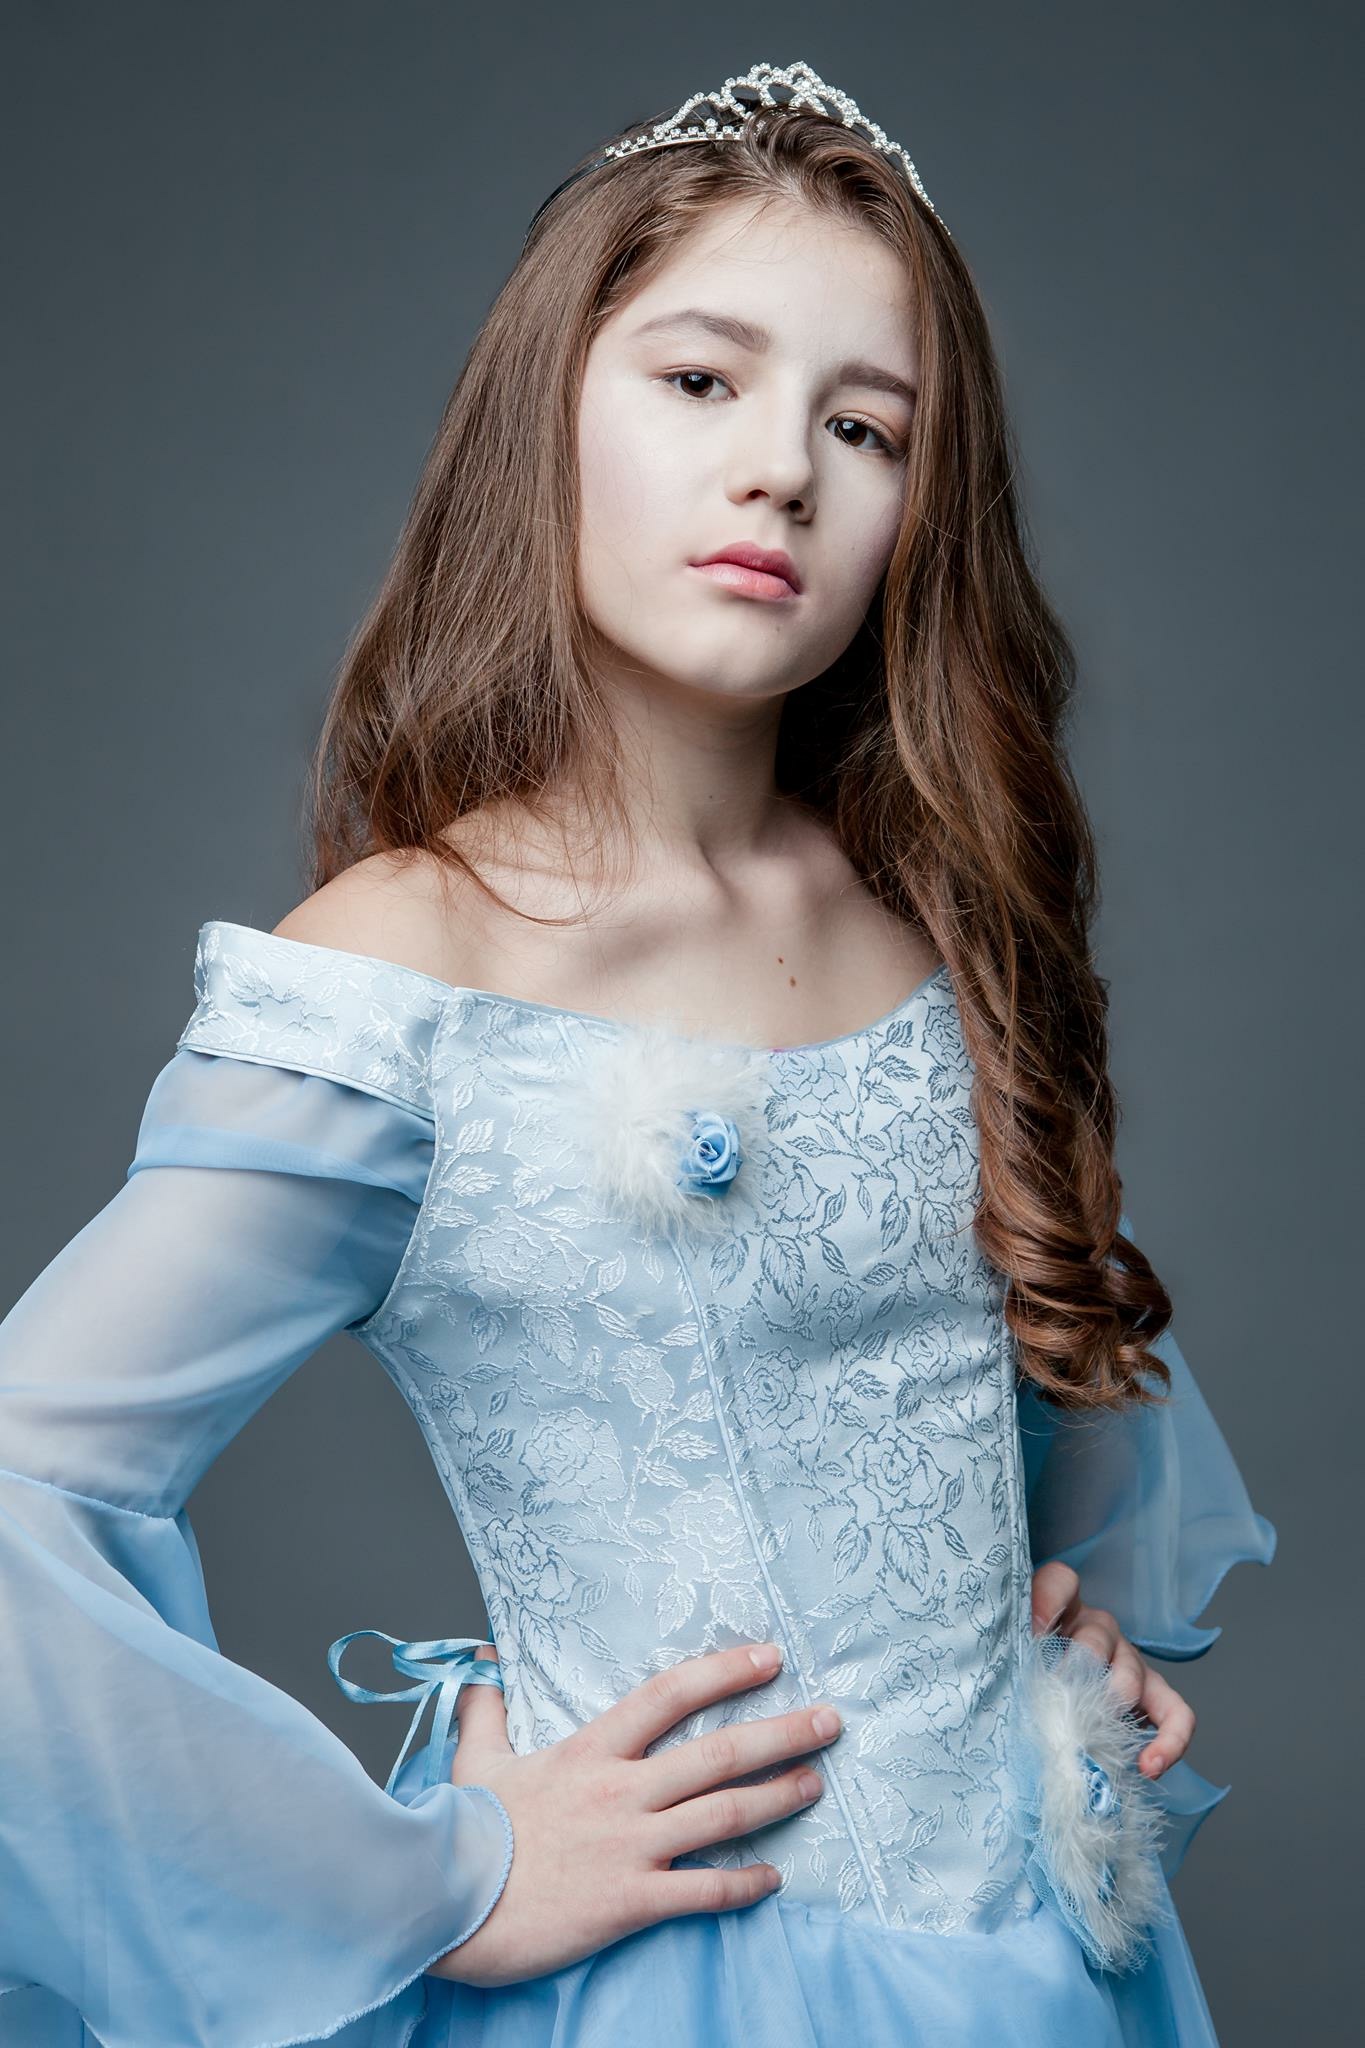 Валерия Алексеева - аккредитованная модель для участия в подиумных показах на Междунродной Детской Неделе моды